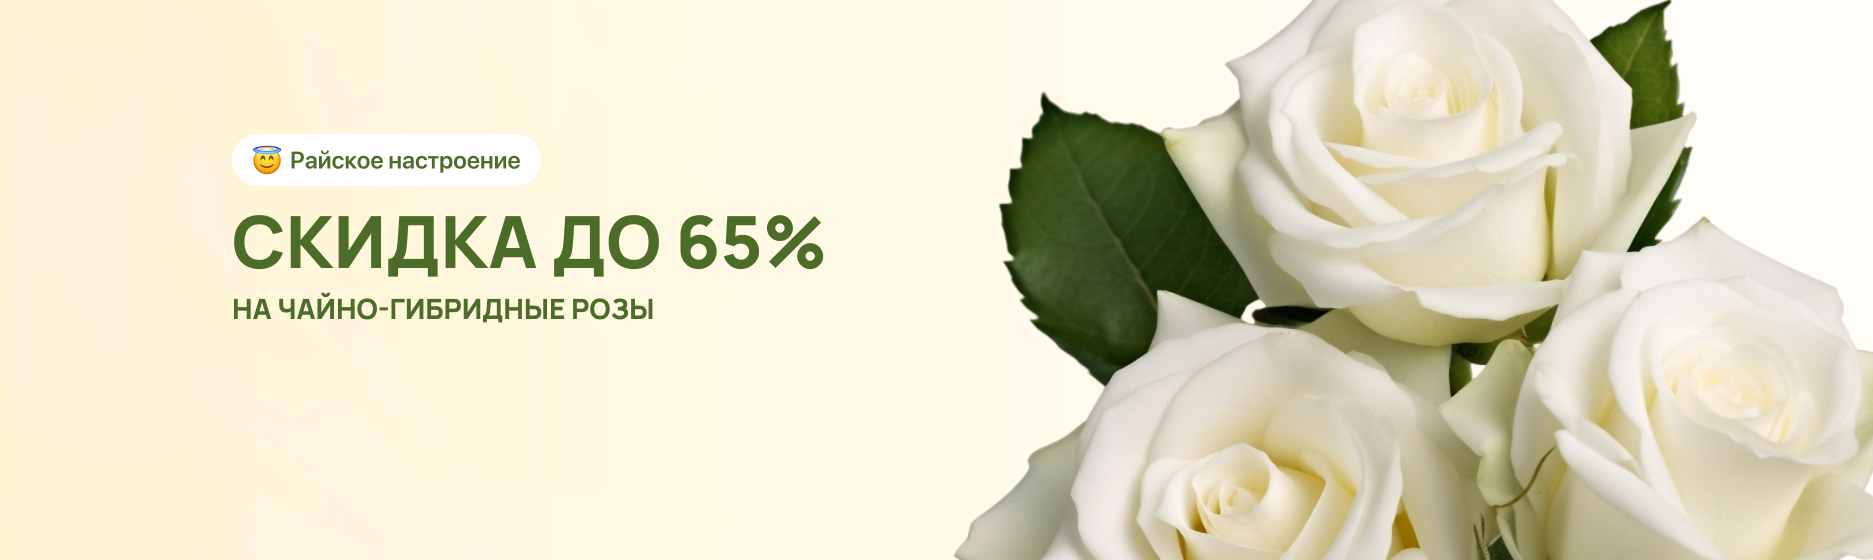 Розы чайно-гибридные со скидками до 65%